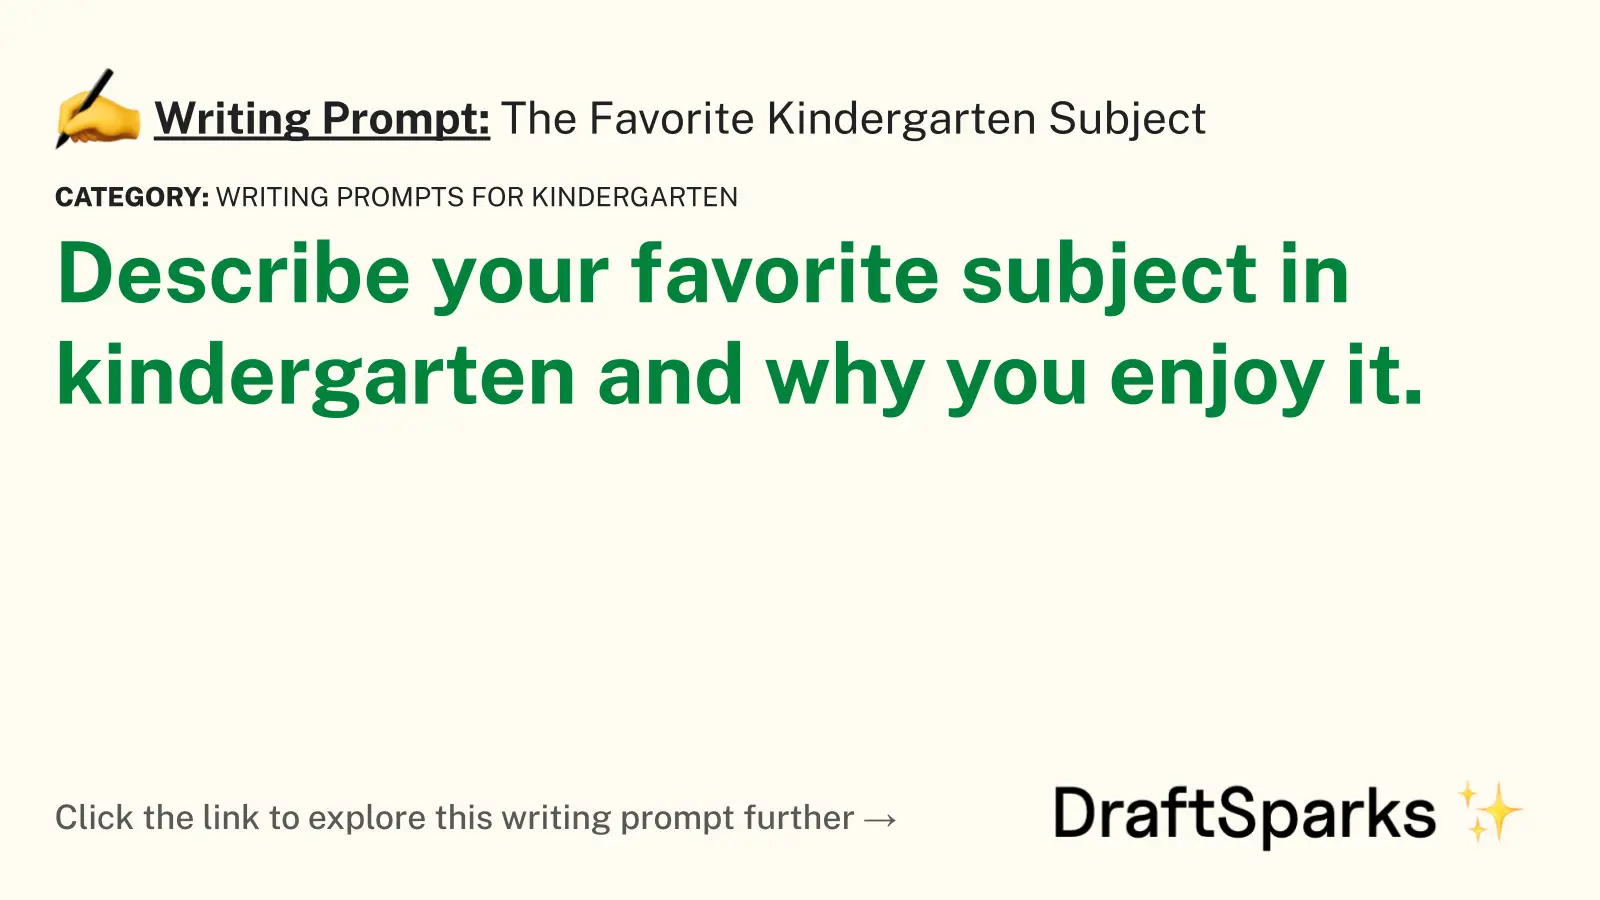 The Favorite Kindergarten Subject